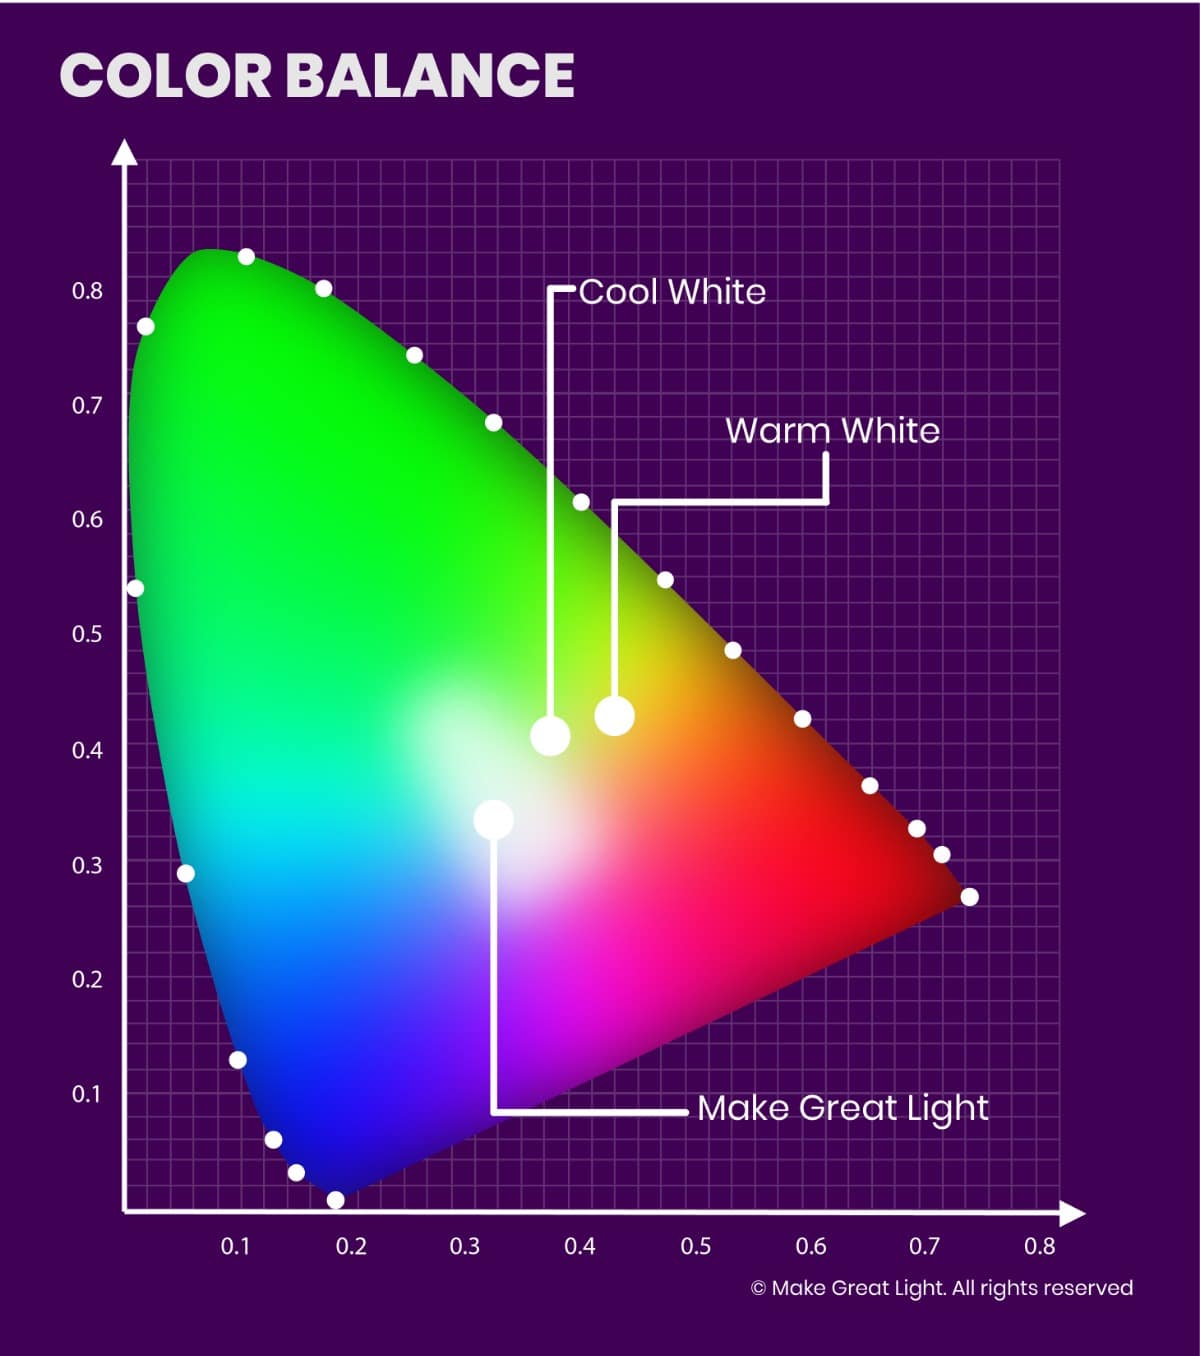 fluorescent light spectrum chart